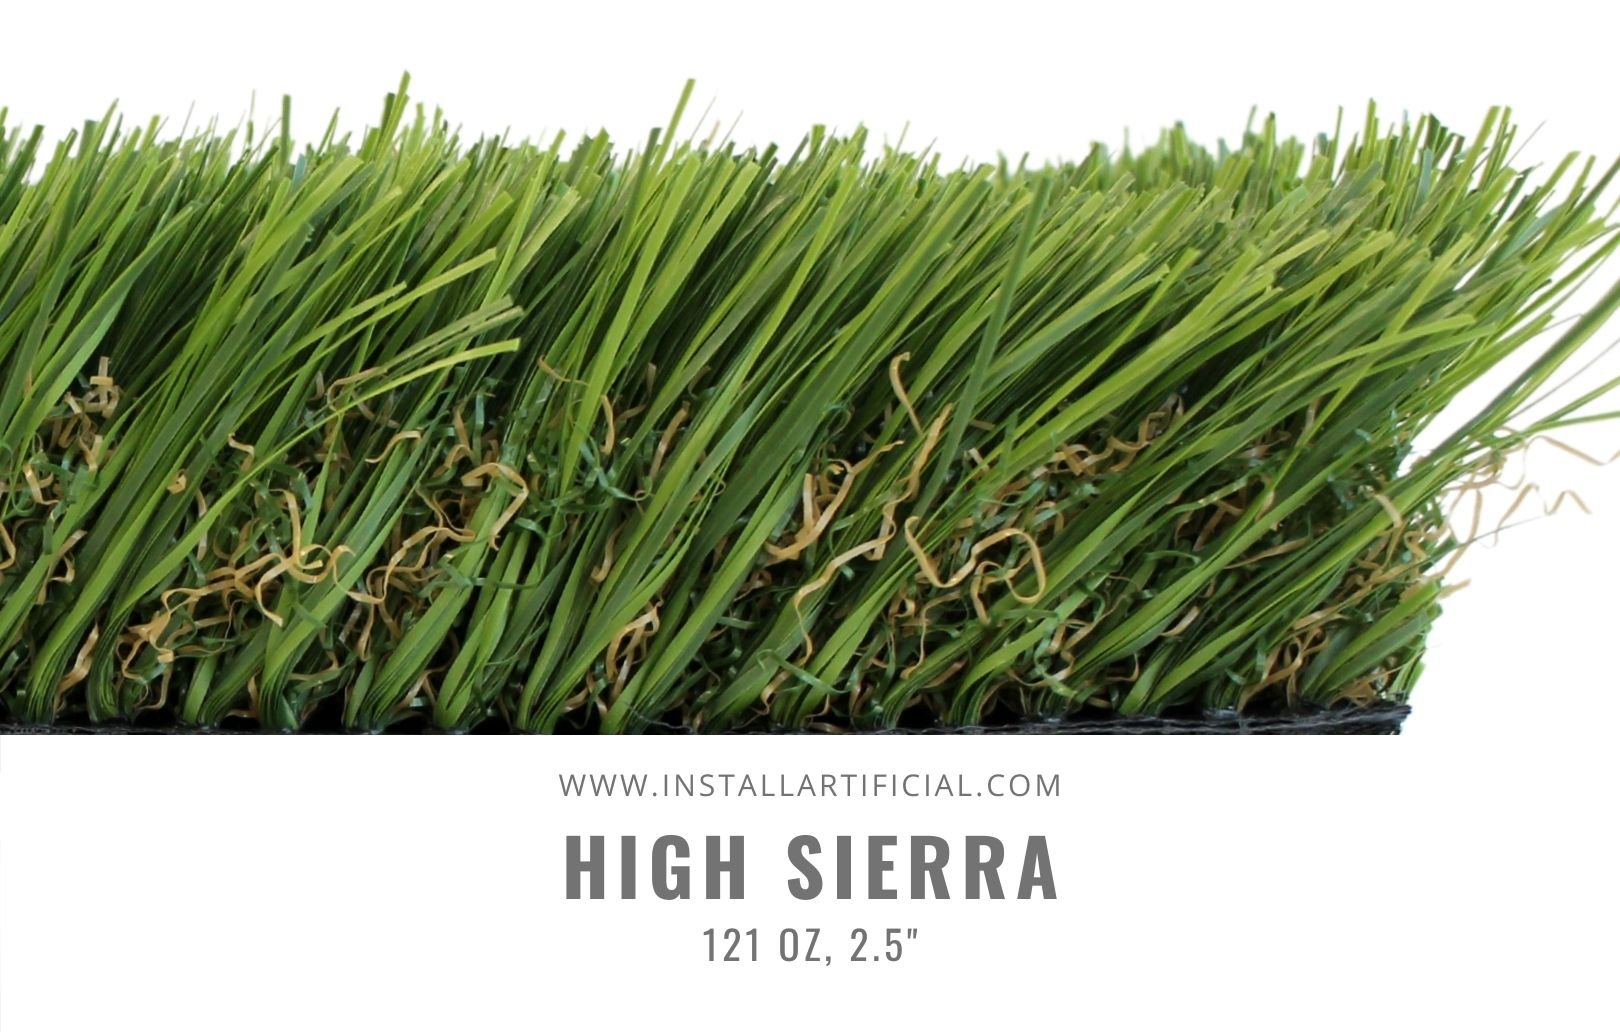 High Sierra, Global Syn Turf, side